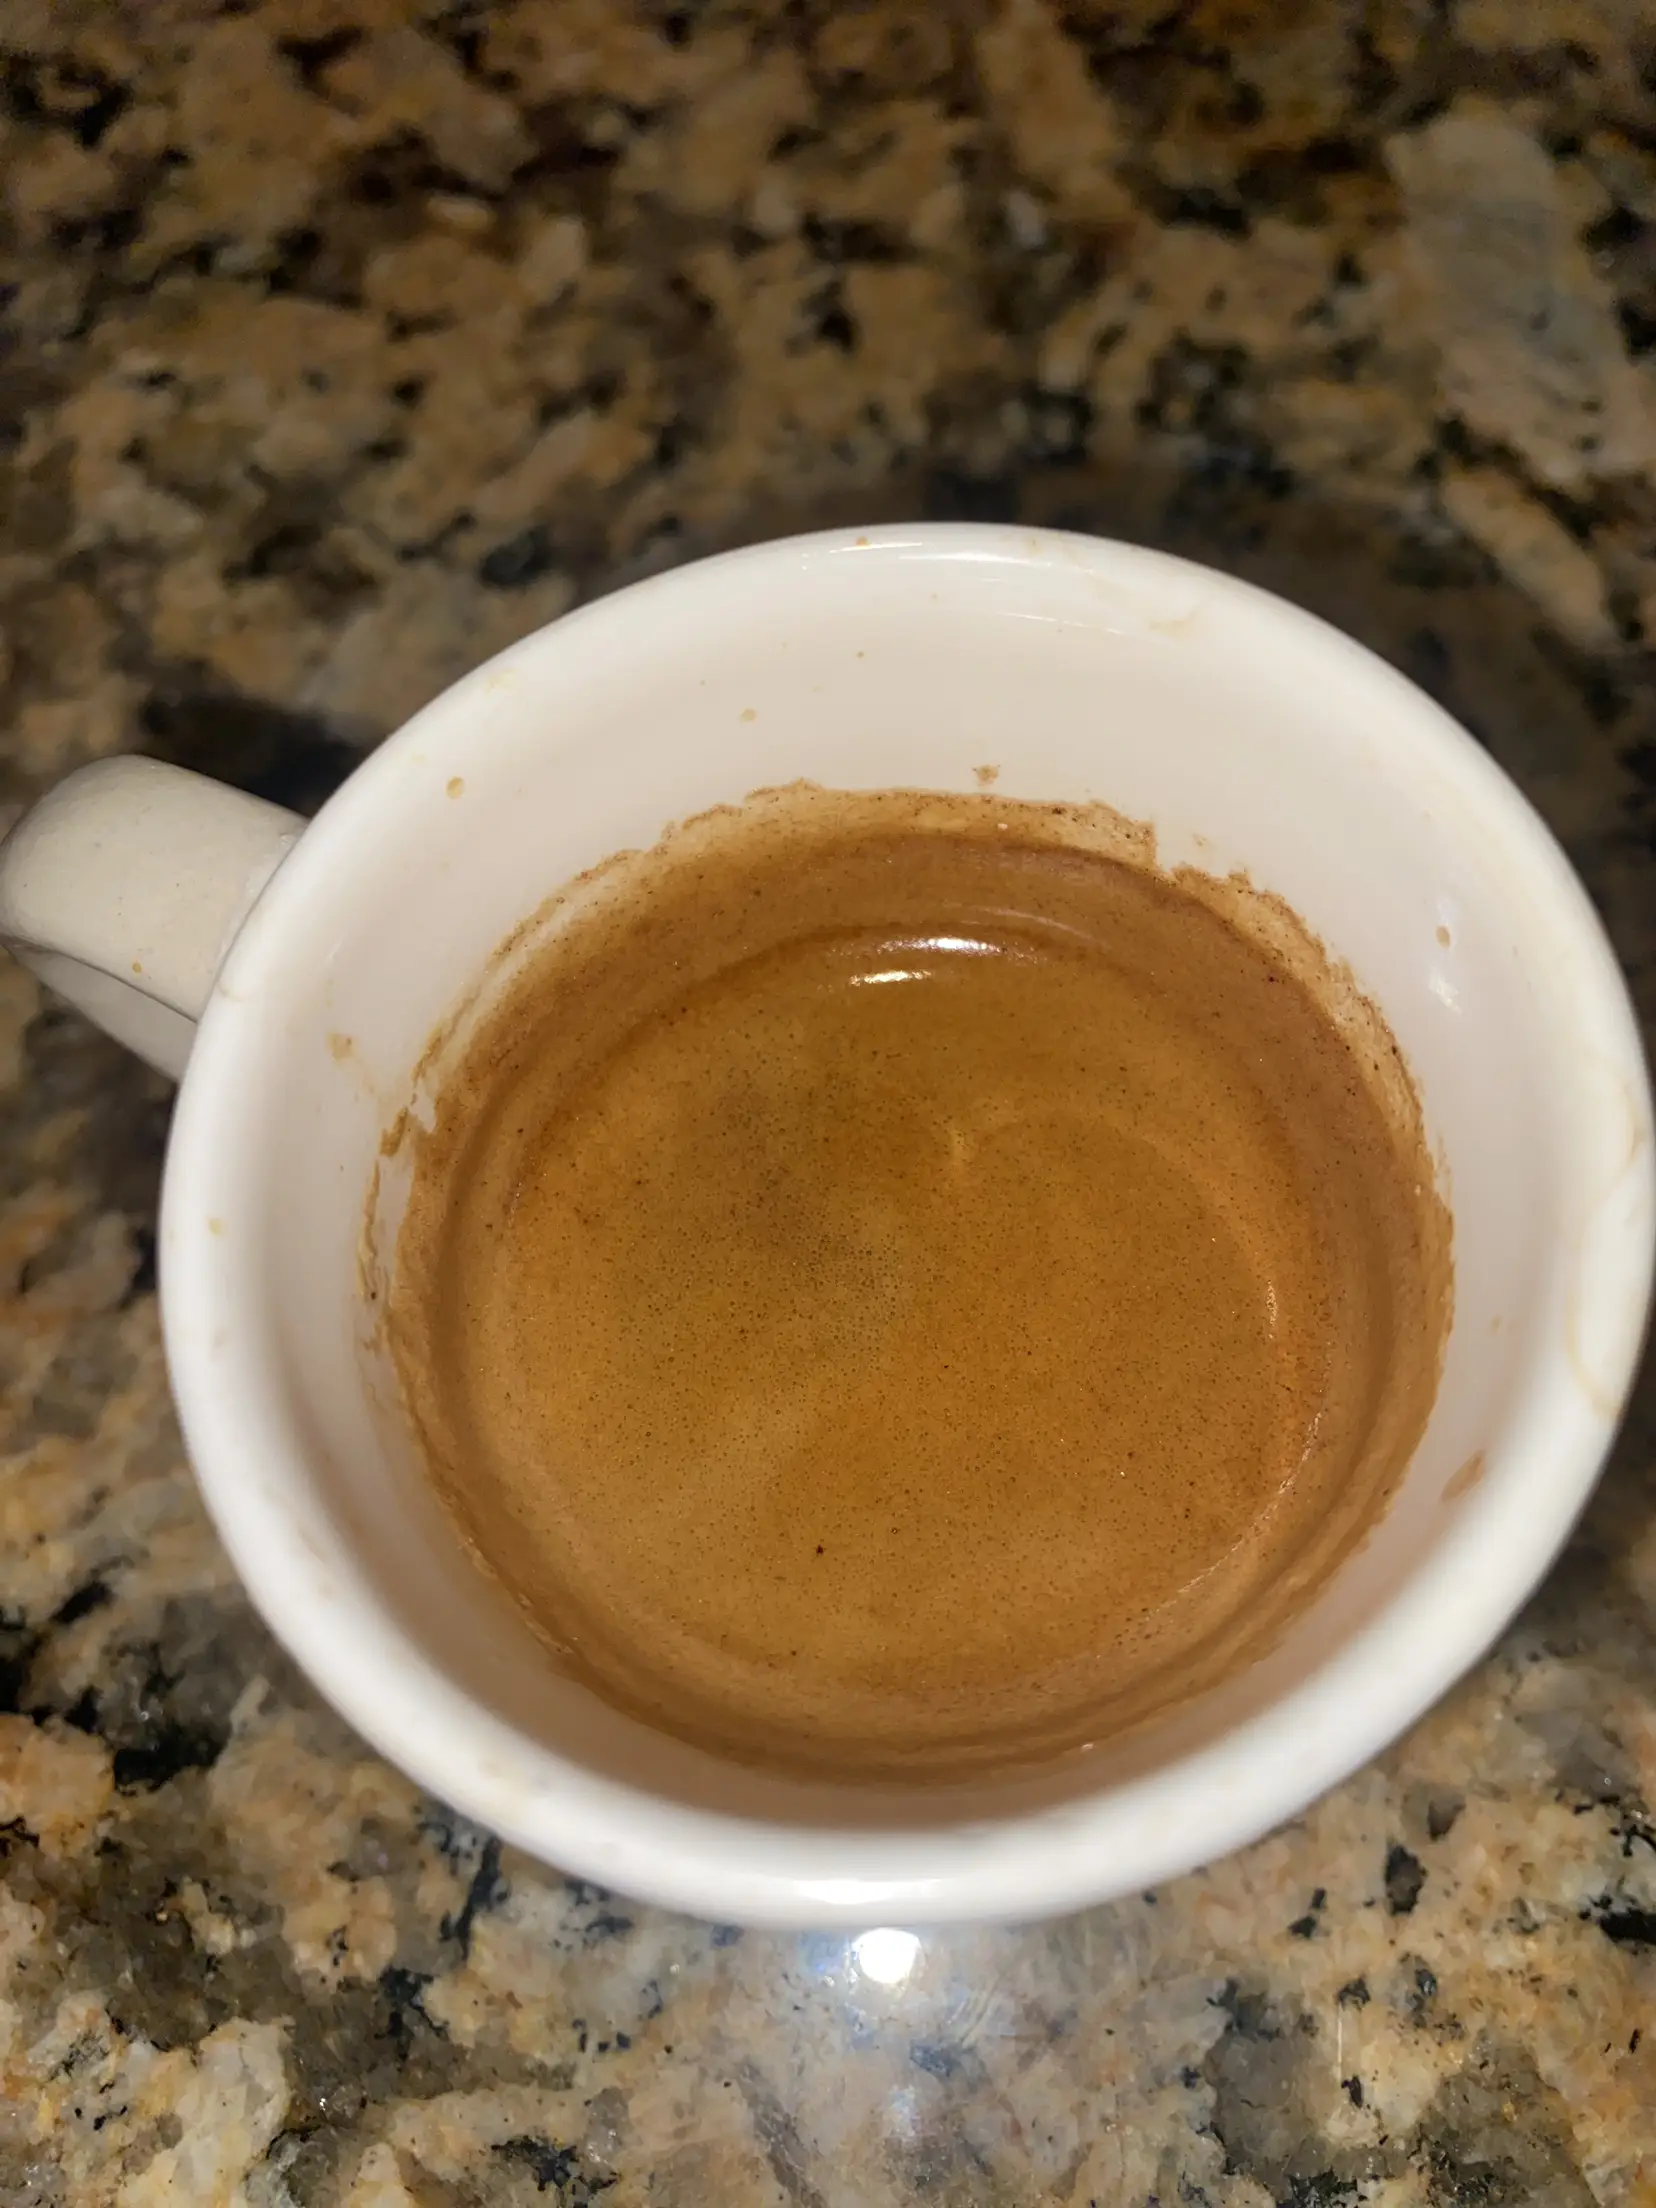 Lavazza tostado medio, café molido - Caffe Espresso - 8 oz - 2 pk